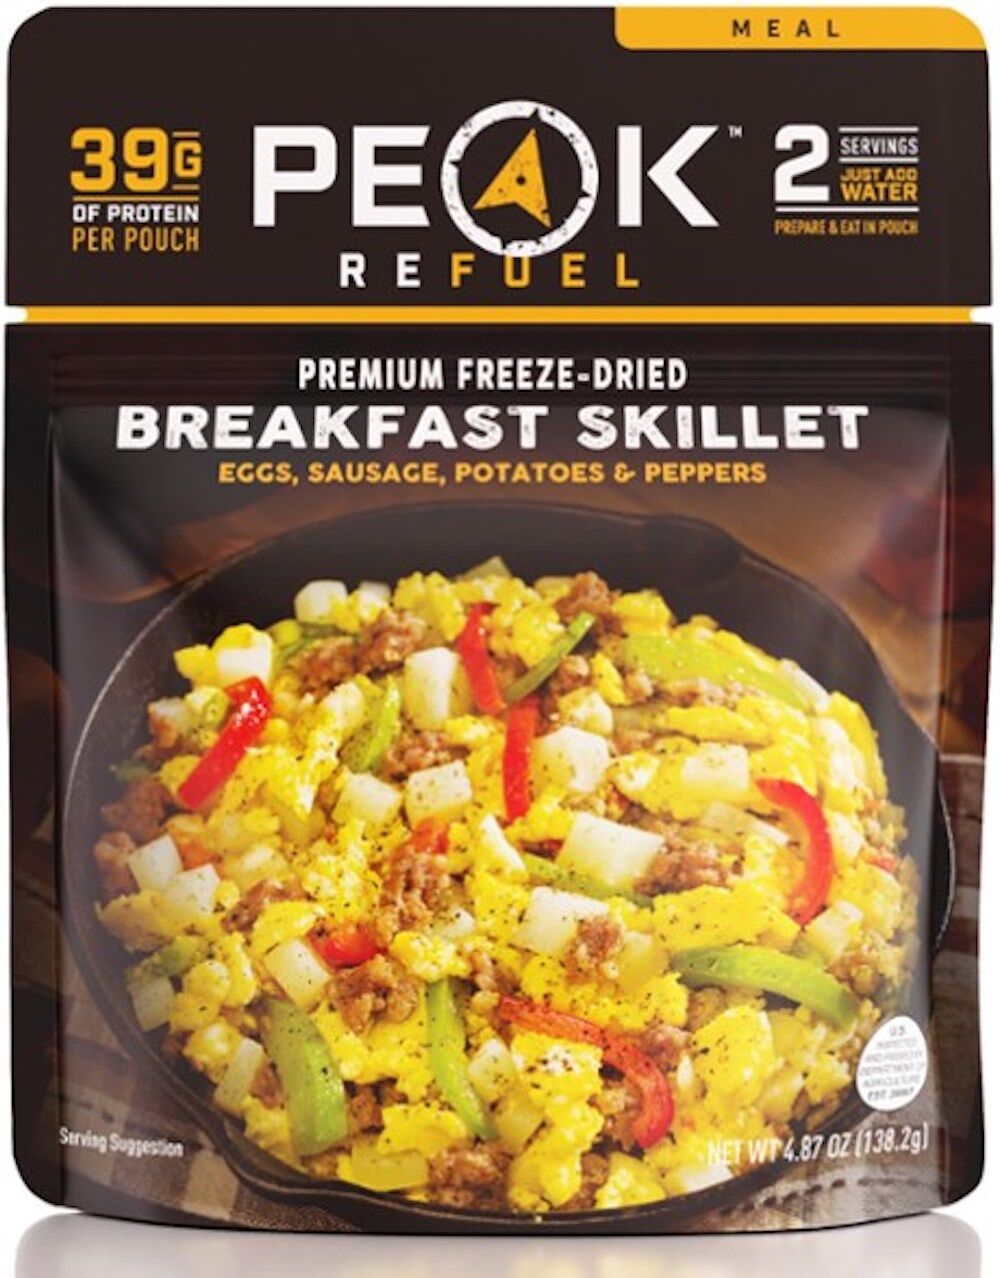 Packaging for Peak breakast skillet